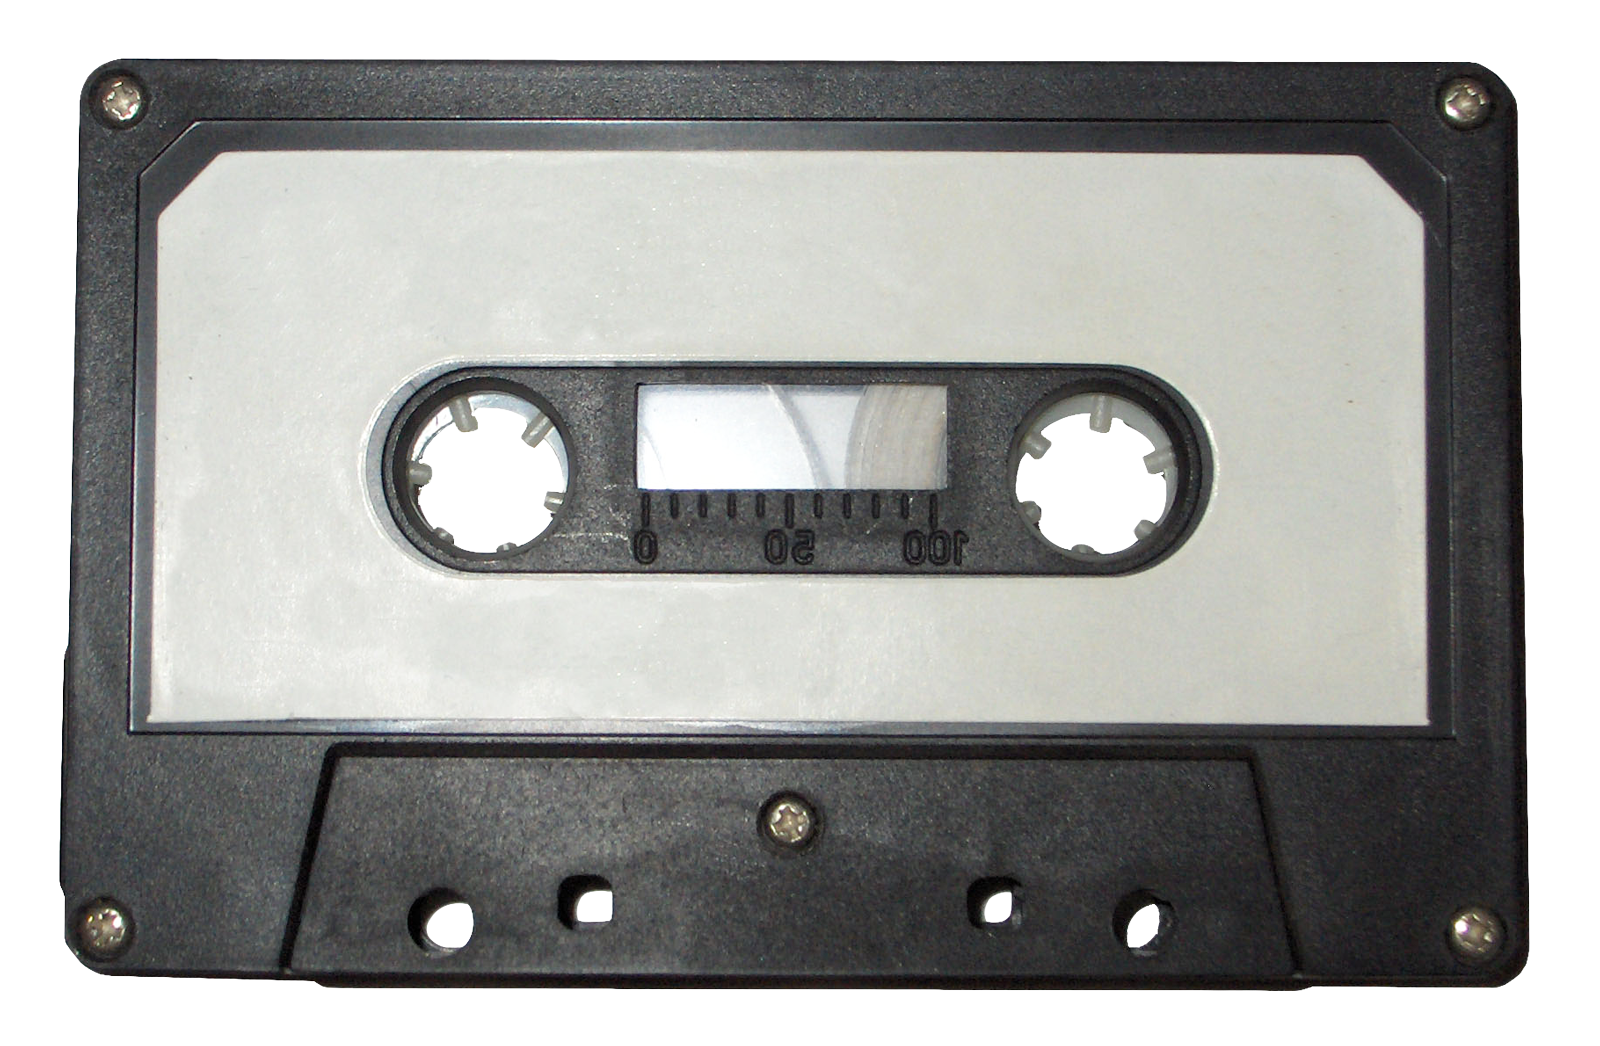 Cassette audio png images hd